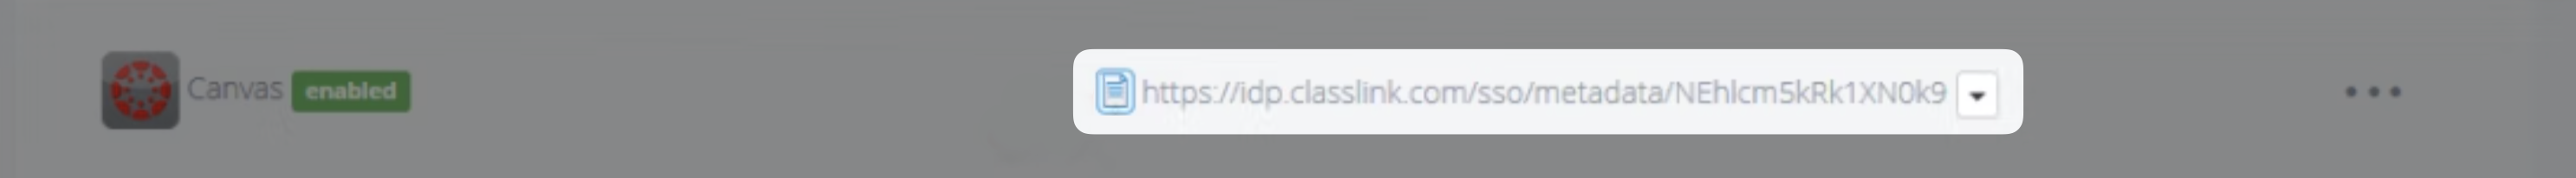 Classlink Metadata URL